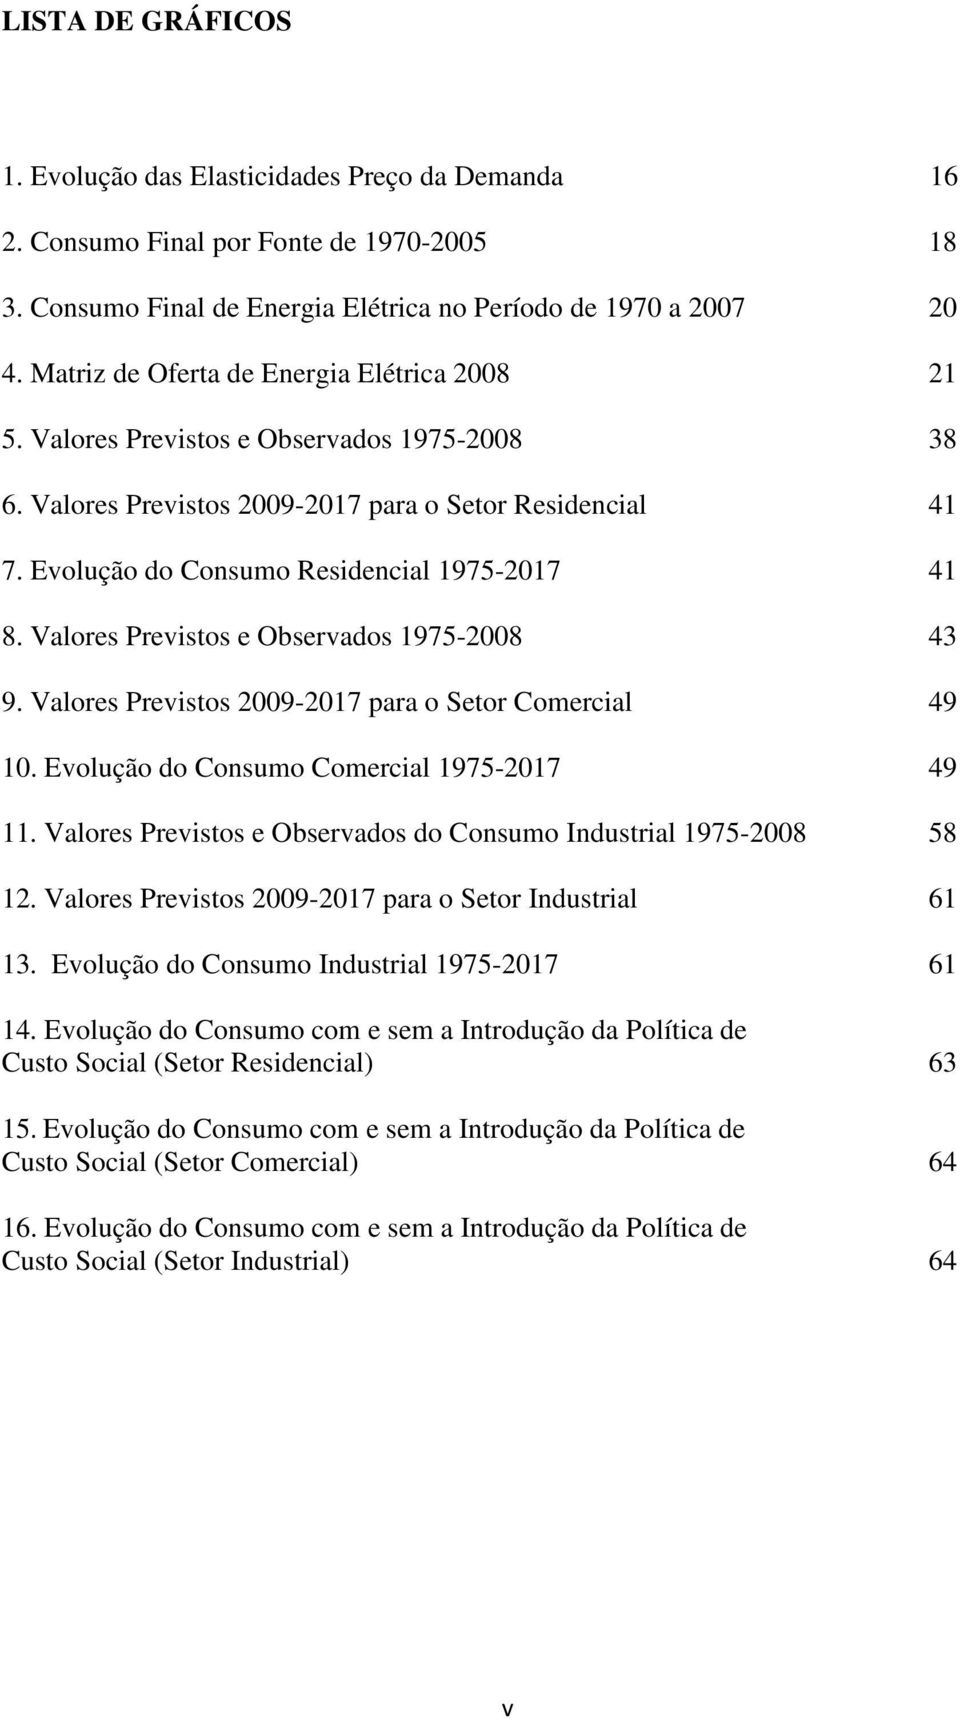 Valores Previsos e Observados 1975-2008 43 9. Valores Previsos 2009-2017 para o Seor Comercial 49 10. Evolução do Consumo Comercial 1975-2017 49 11.